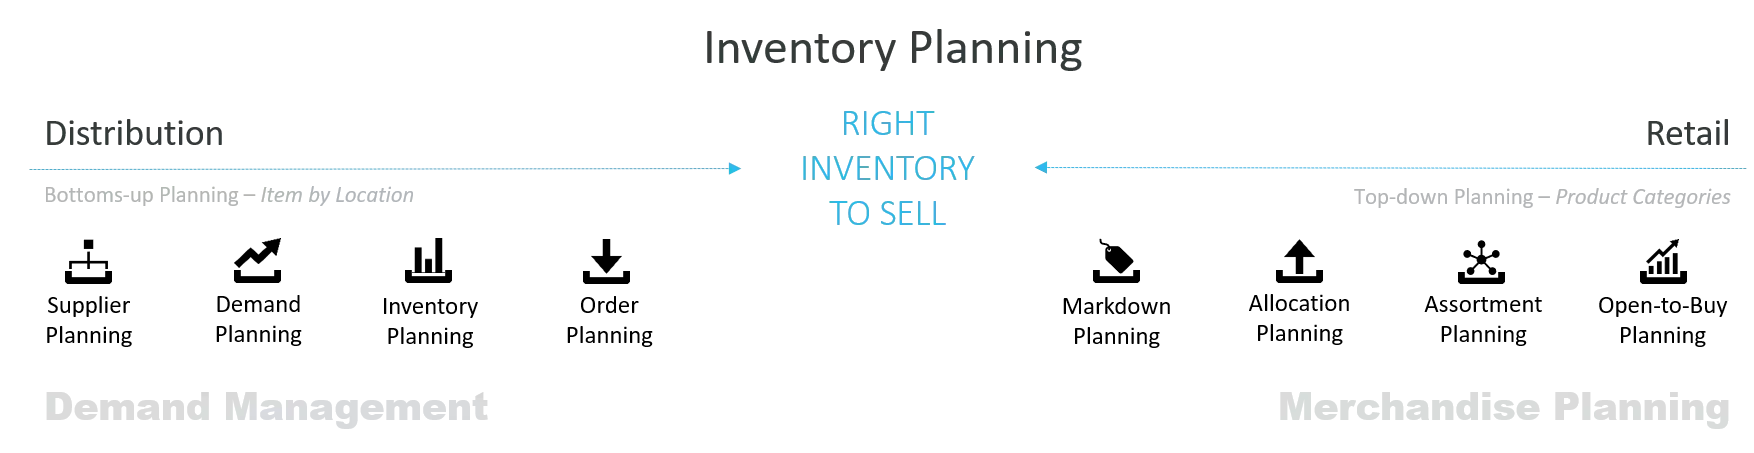 Demand Management and Merchandise Planning | InventoryWorx